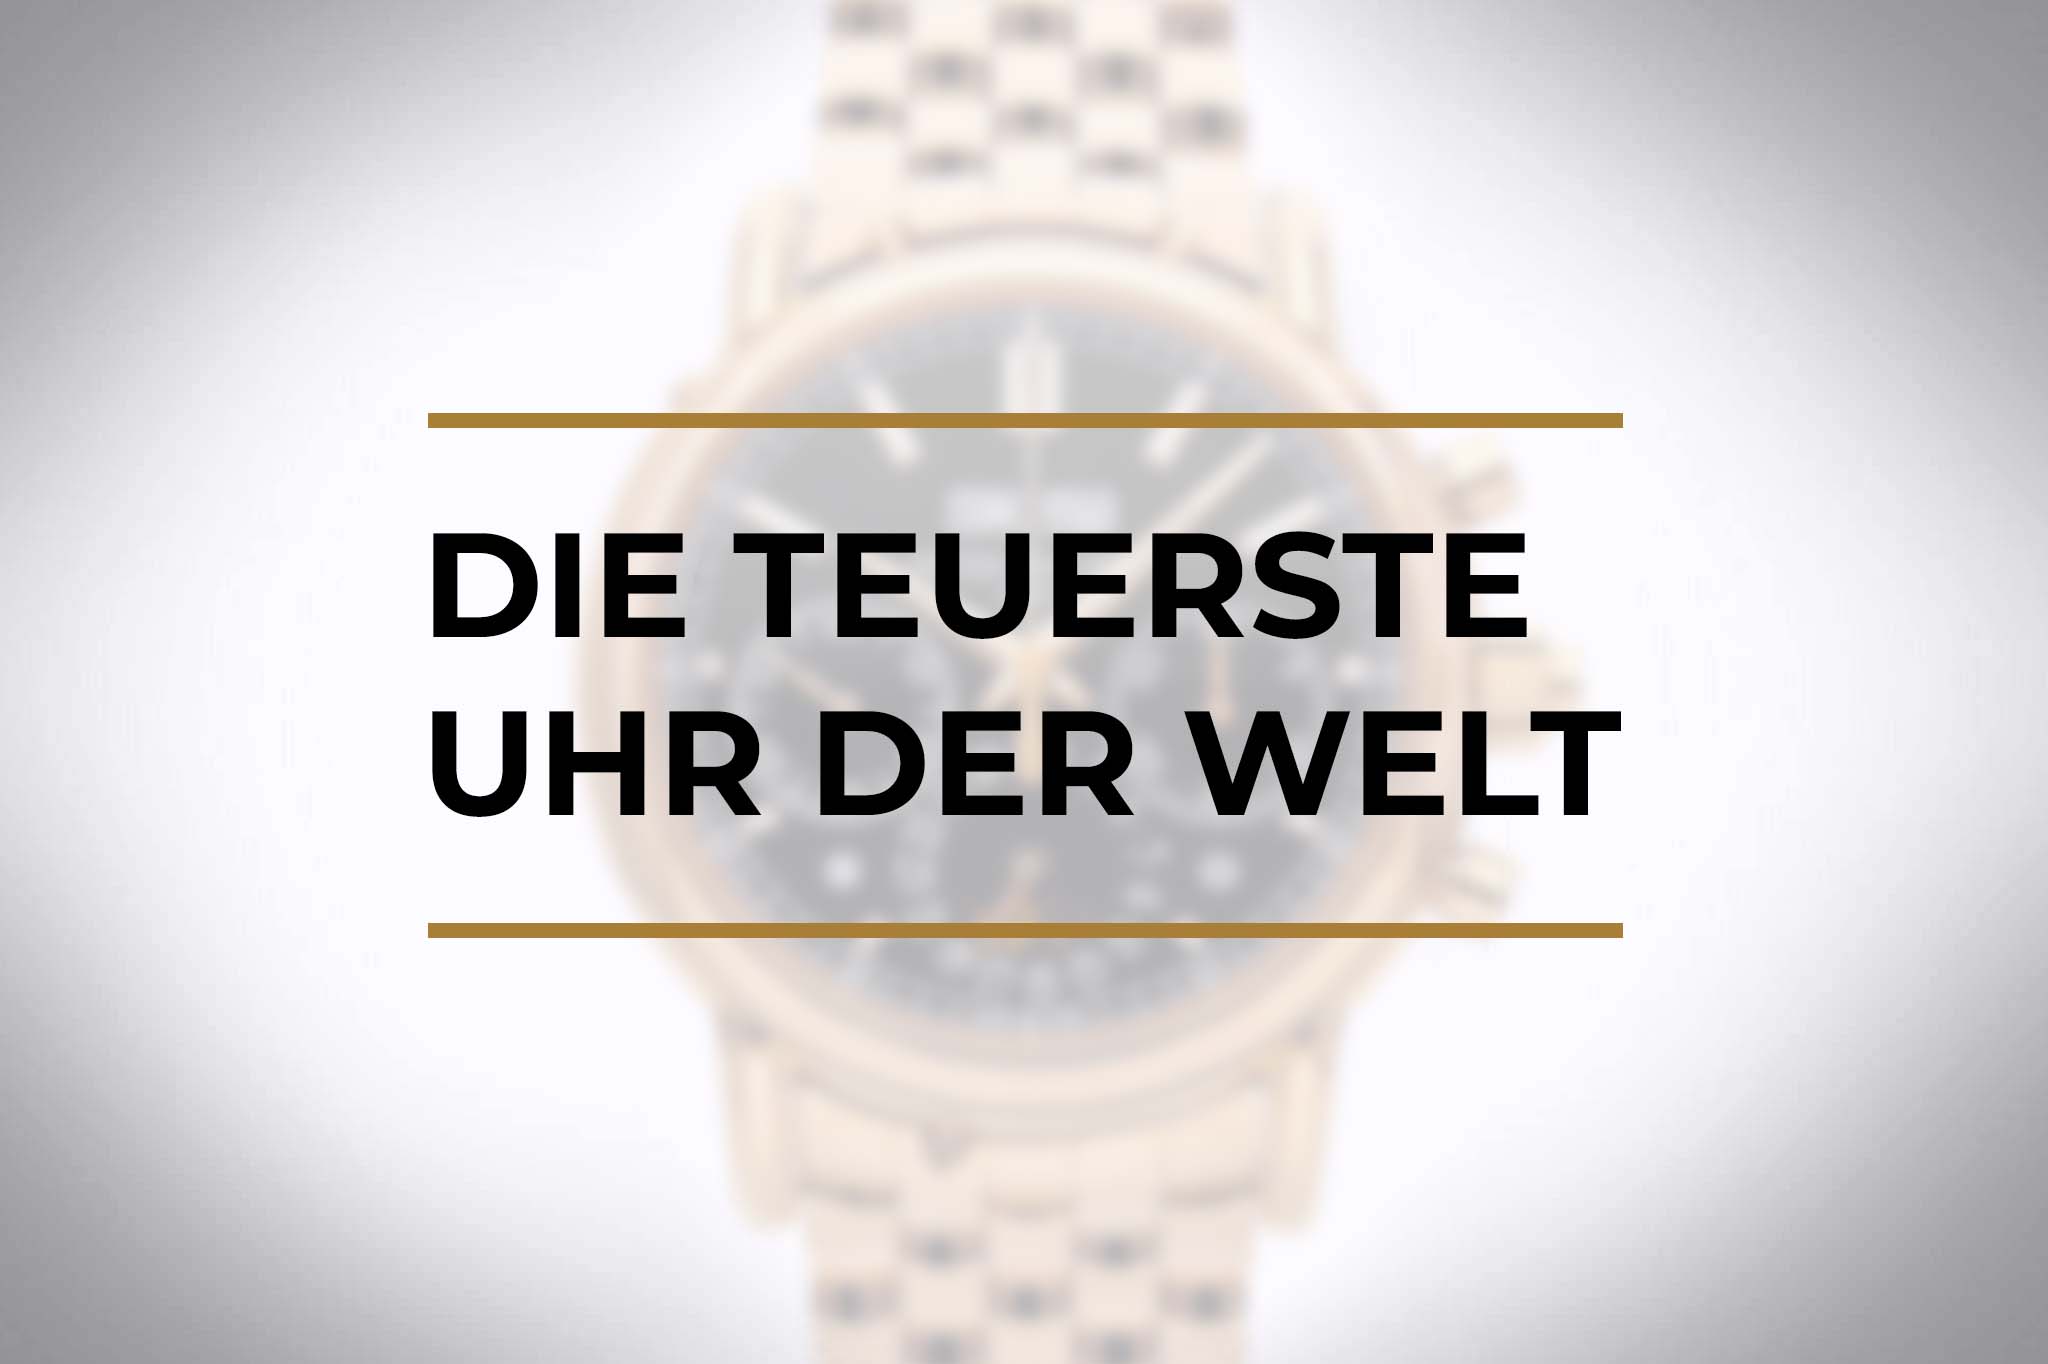 Die teuerste Uhr der Welt – die teuersten Uhren